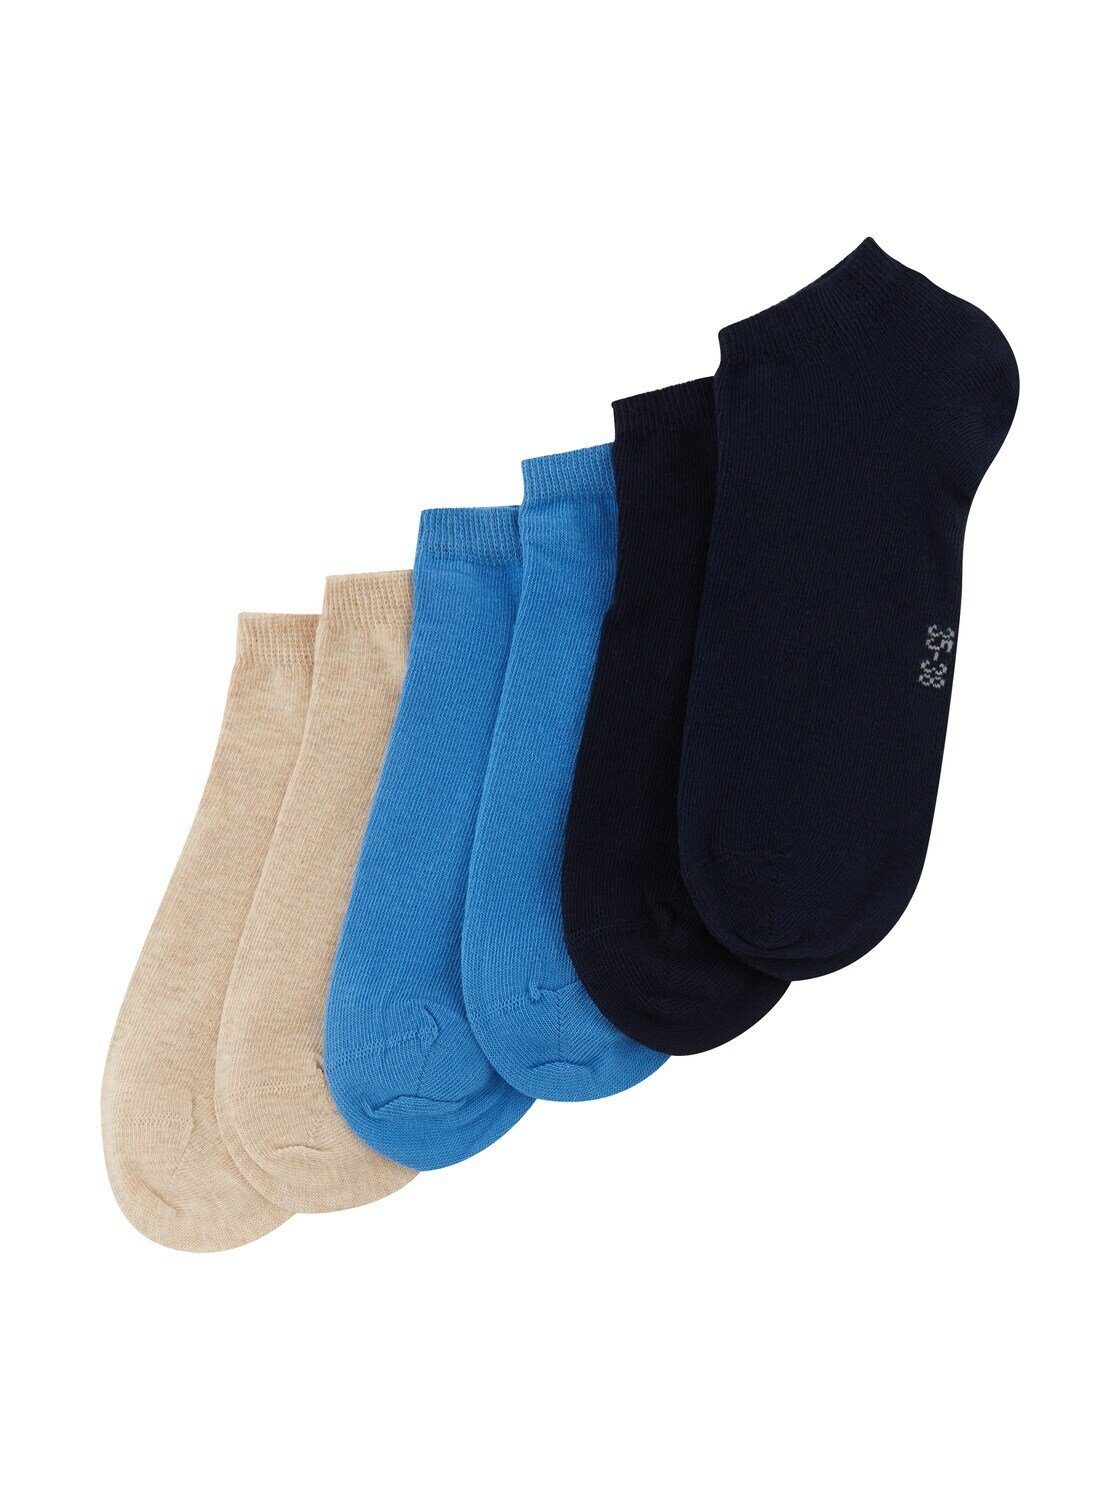 TOM TAILOR Socken Socken im Multipack marine (im Sechserpack)